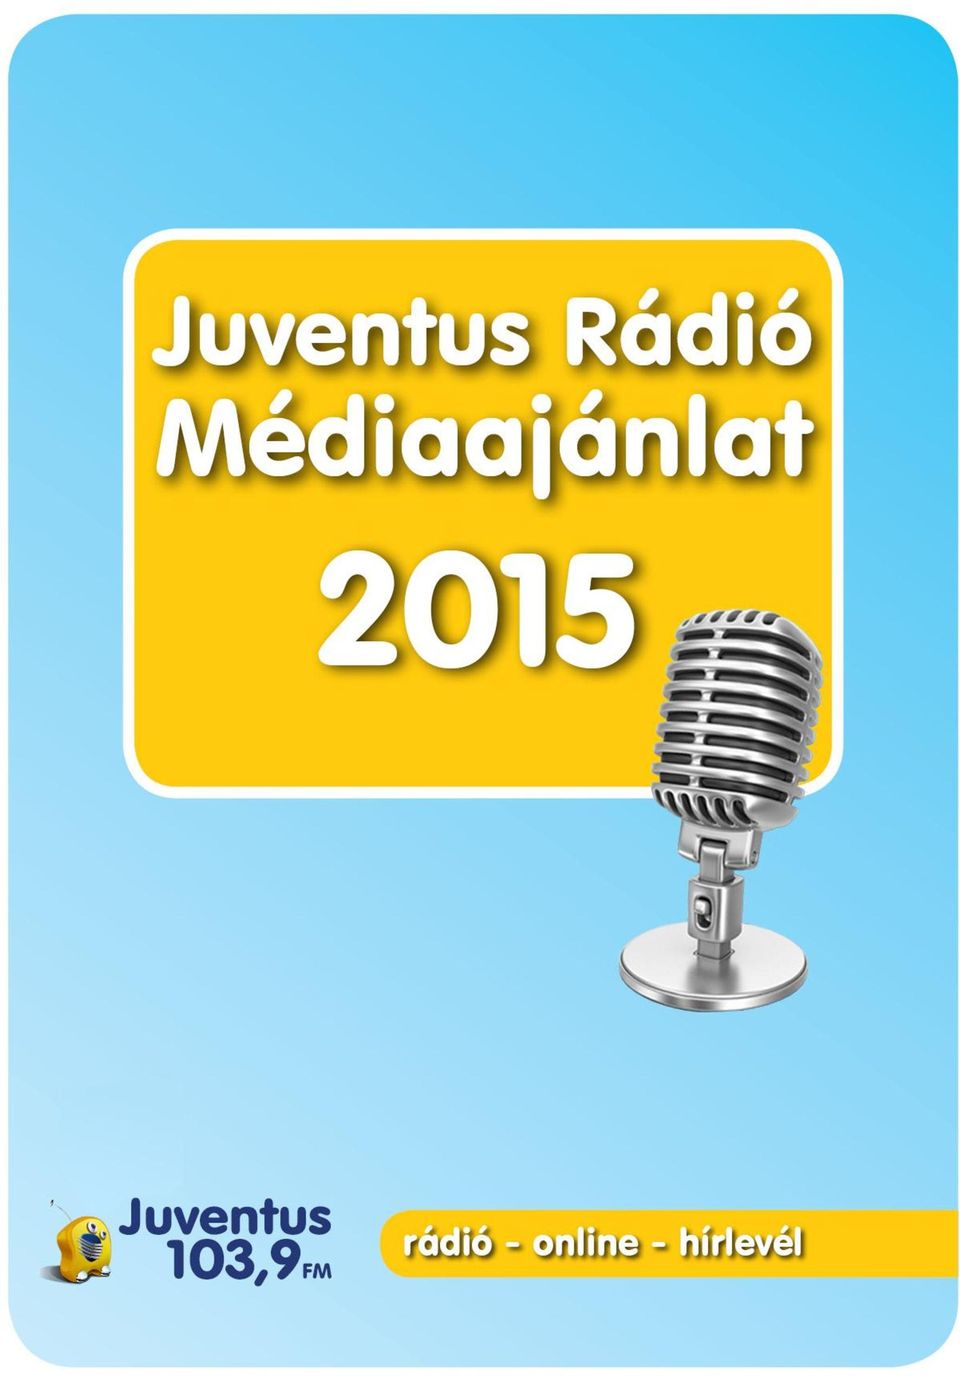 Juventus rádió 103,9 Budapest kedvencei, változatosan! - PDF Free Download